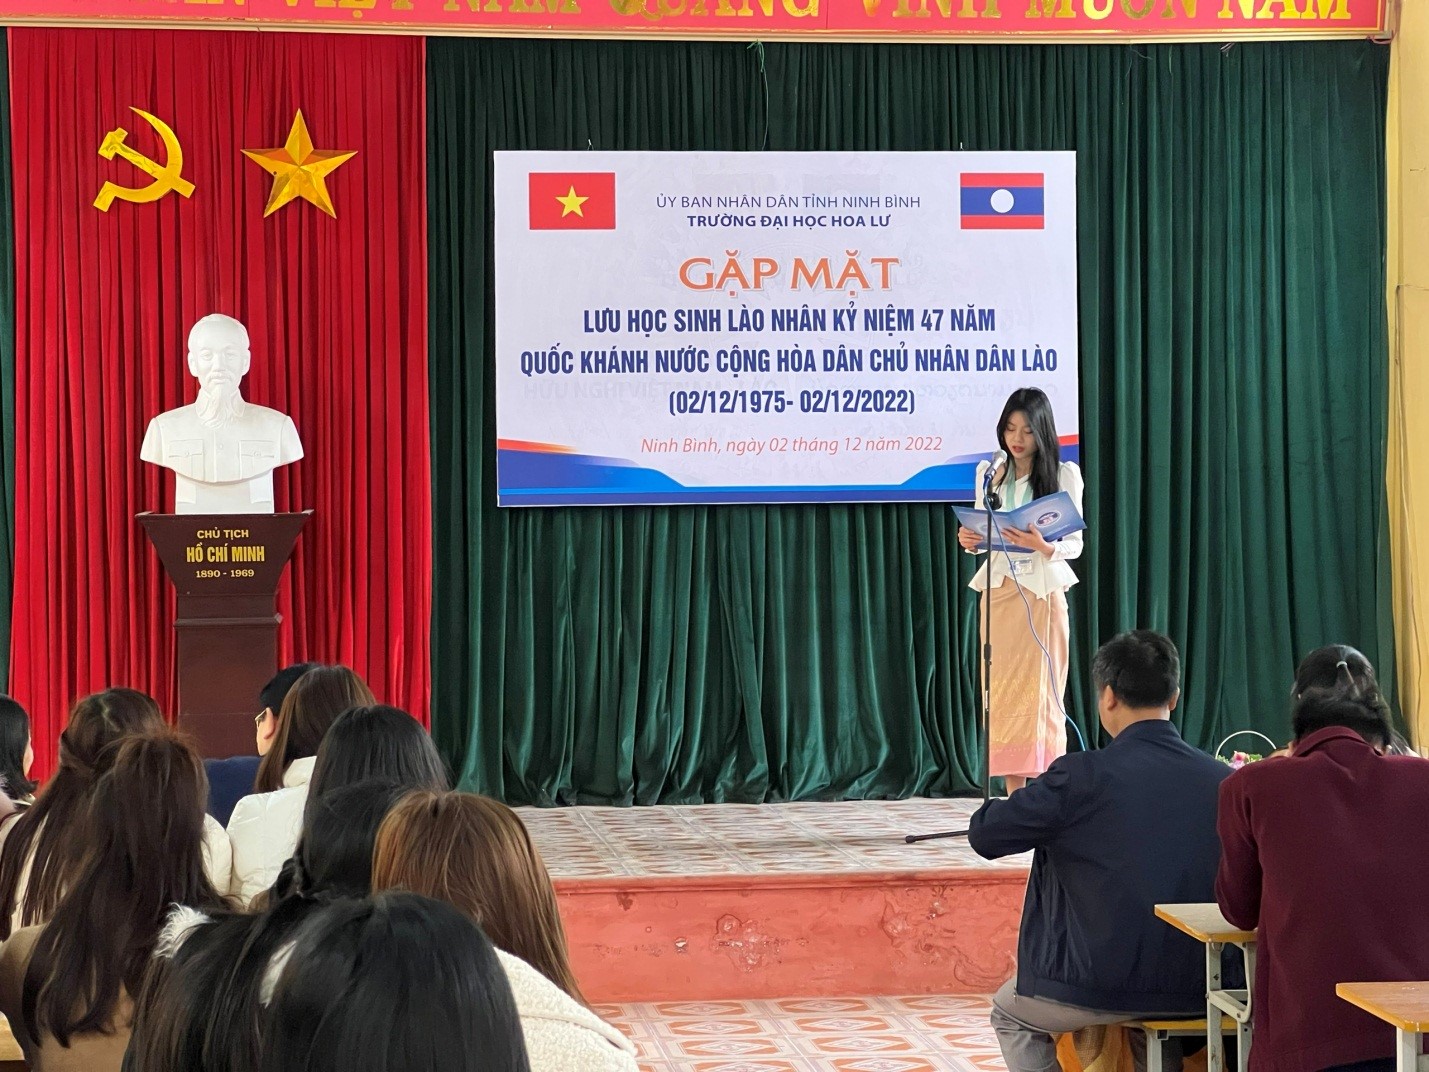 Chương trình Gặp mặt lưu học sinh Lào nhân kỷ niệm 47 năm Quốc khánh nước Cộng hòa dân chủ nhân dân Lào (02/12/1975-02/12/2022)